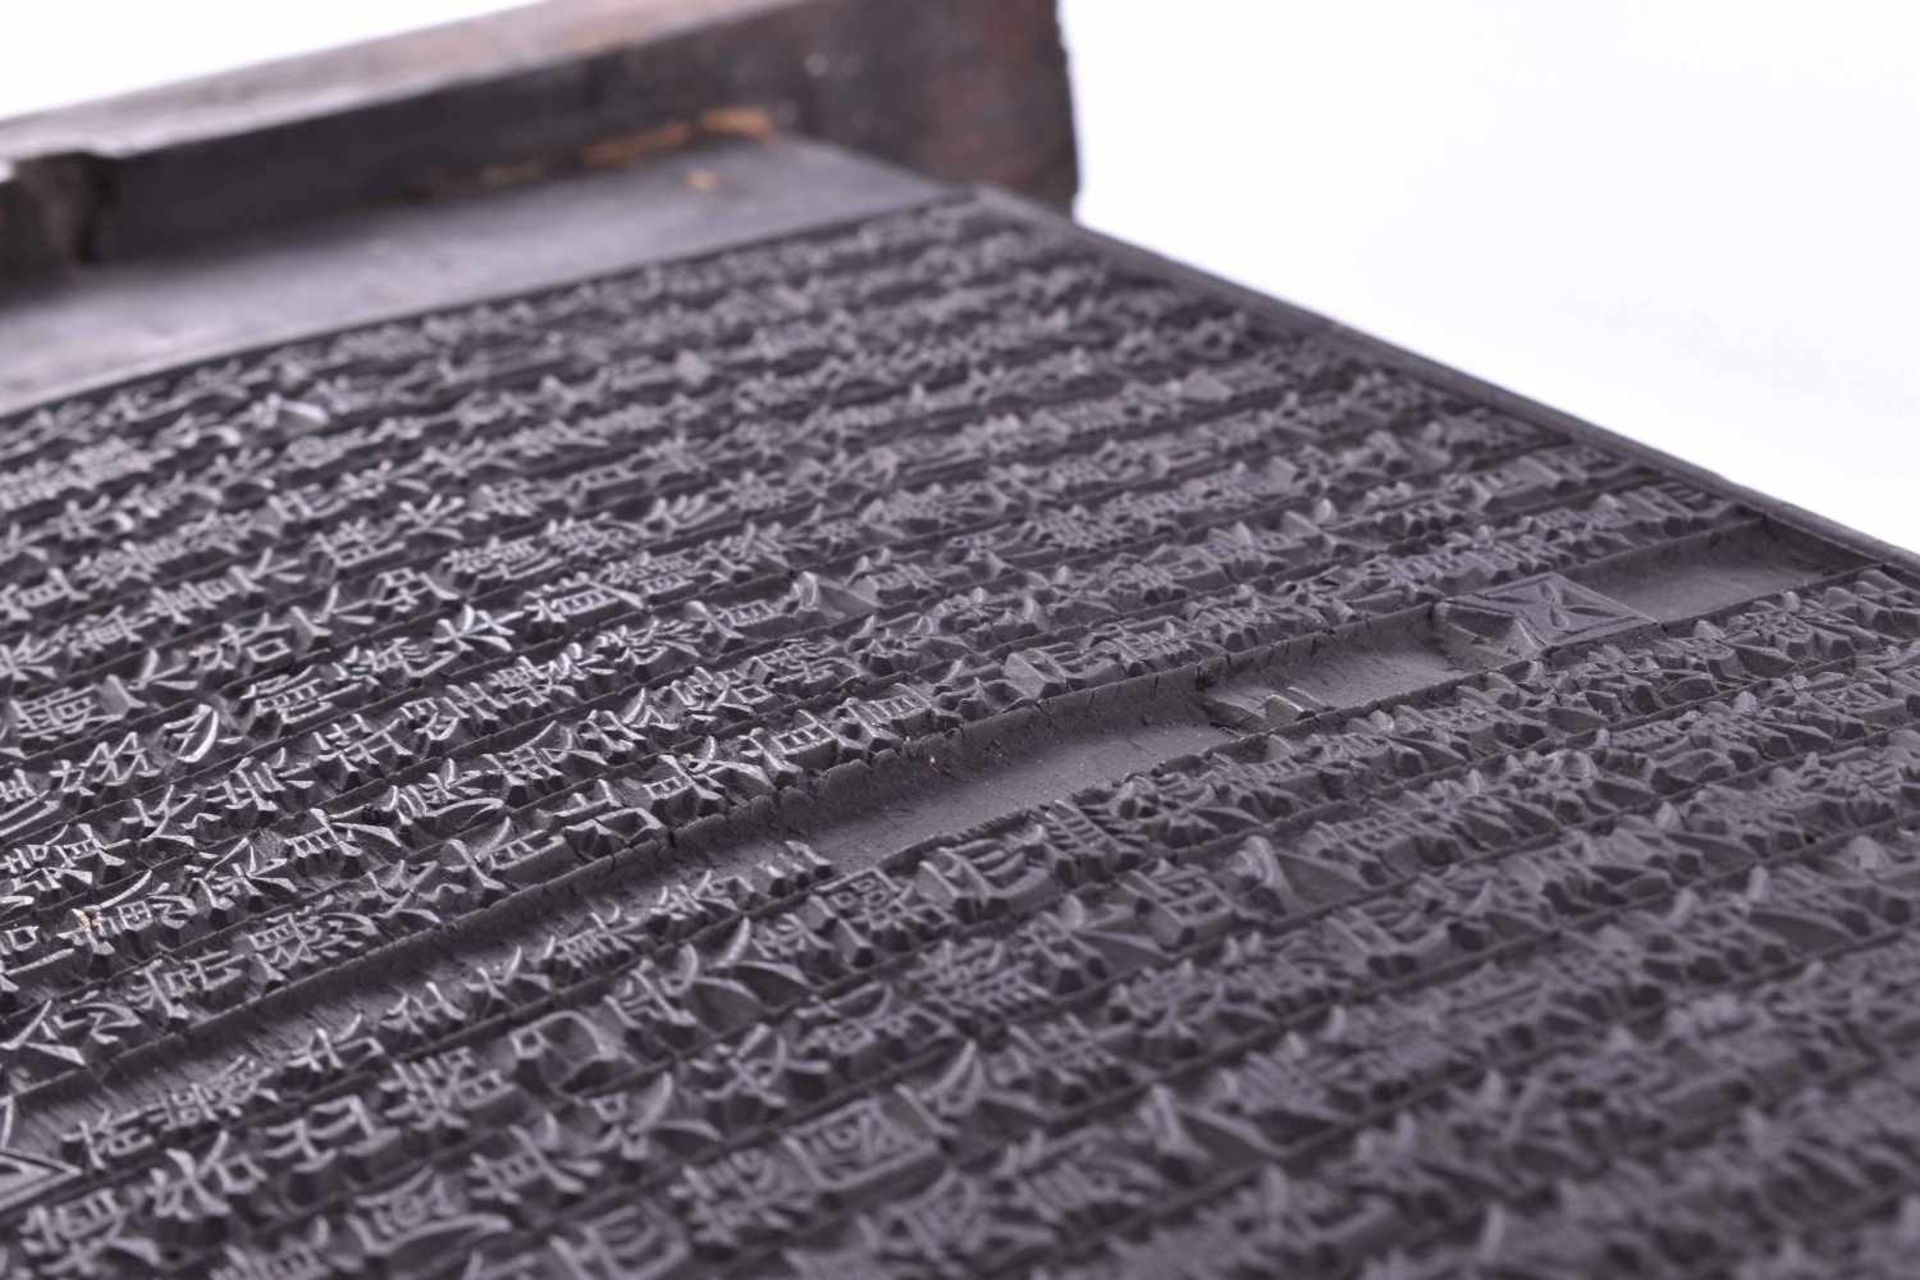 Druckplatte China Qing DynastieHolz, vorder- und rückseitig mit Chinesischen Schriftzeichen, 43,5 cm - Bild 3 aus 4